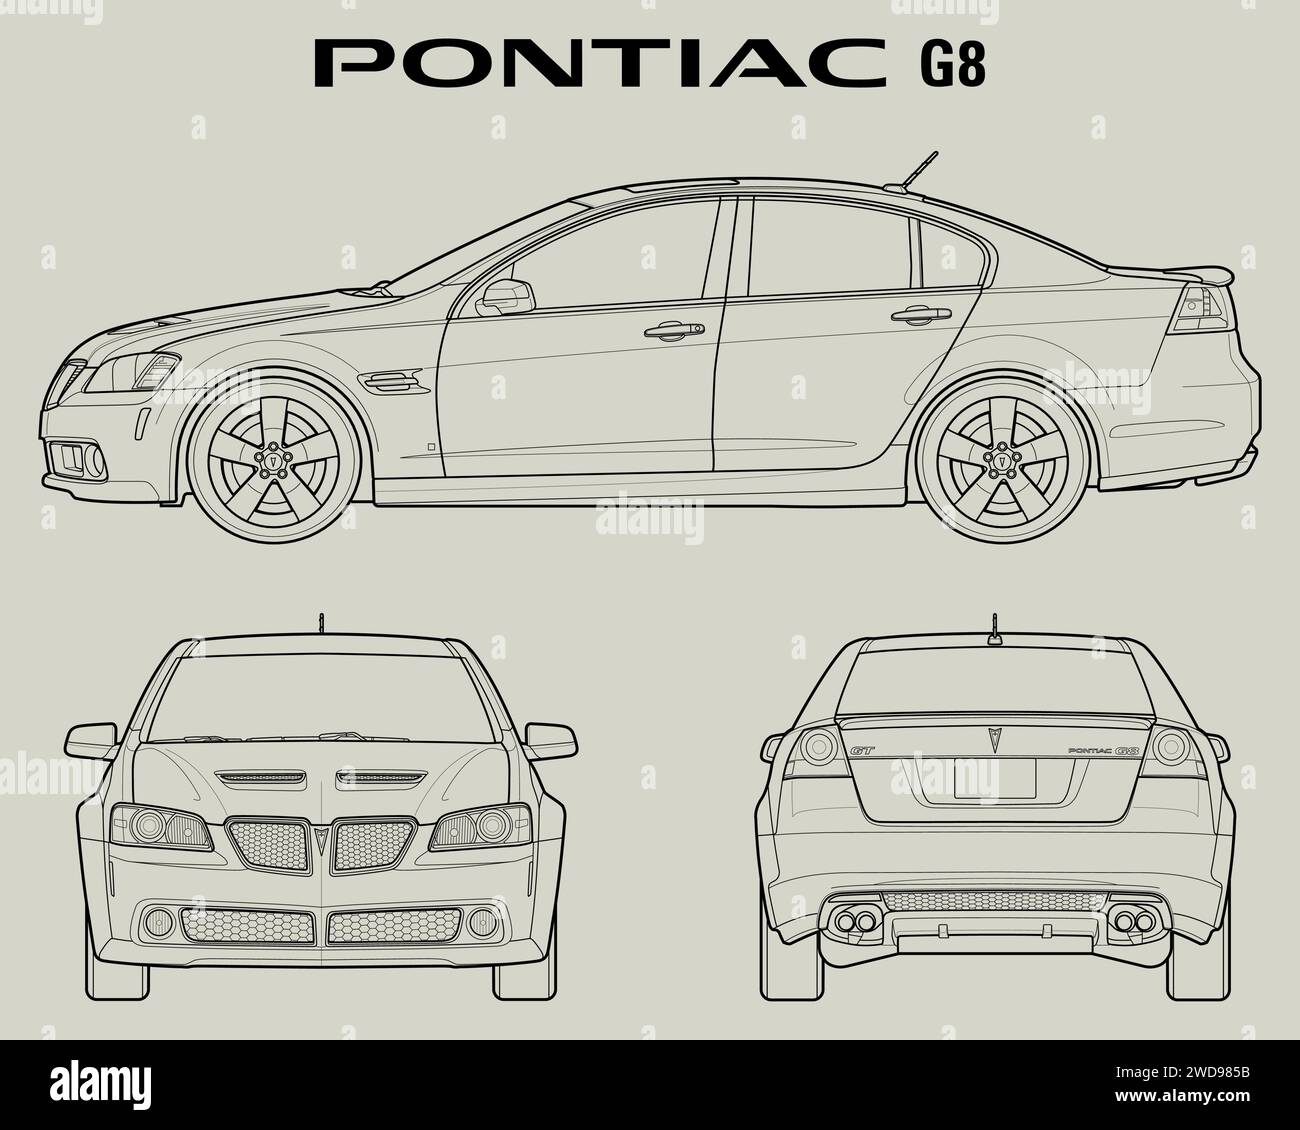 2009 Pontiac G8 car blueprint Stock Vector